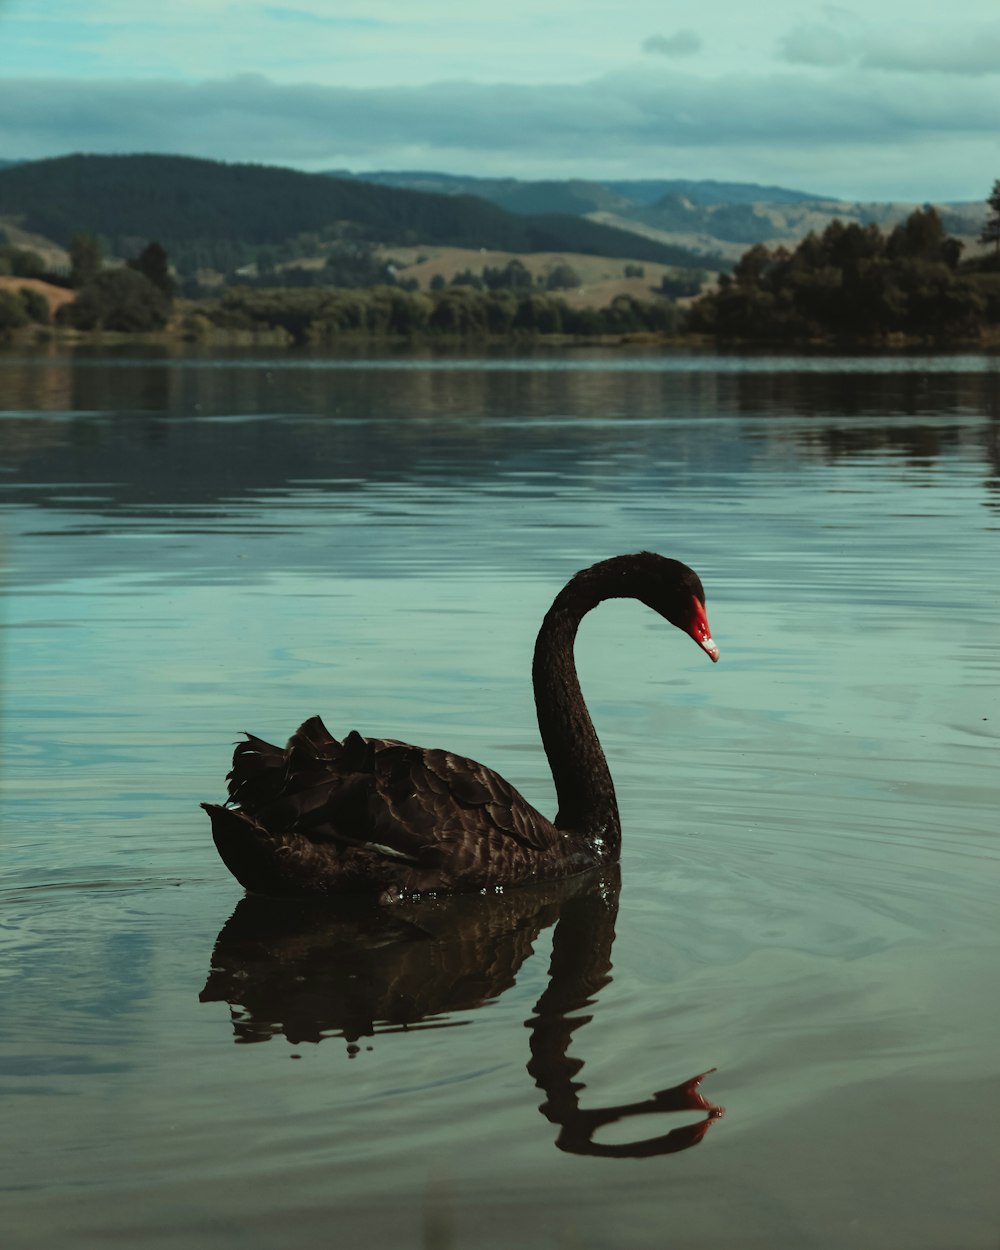 black swan on water during daytime photo – Free Animal Image on Unsplash